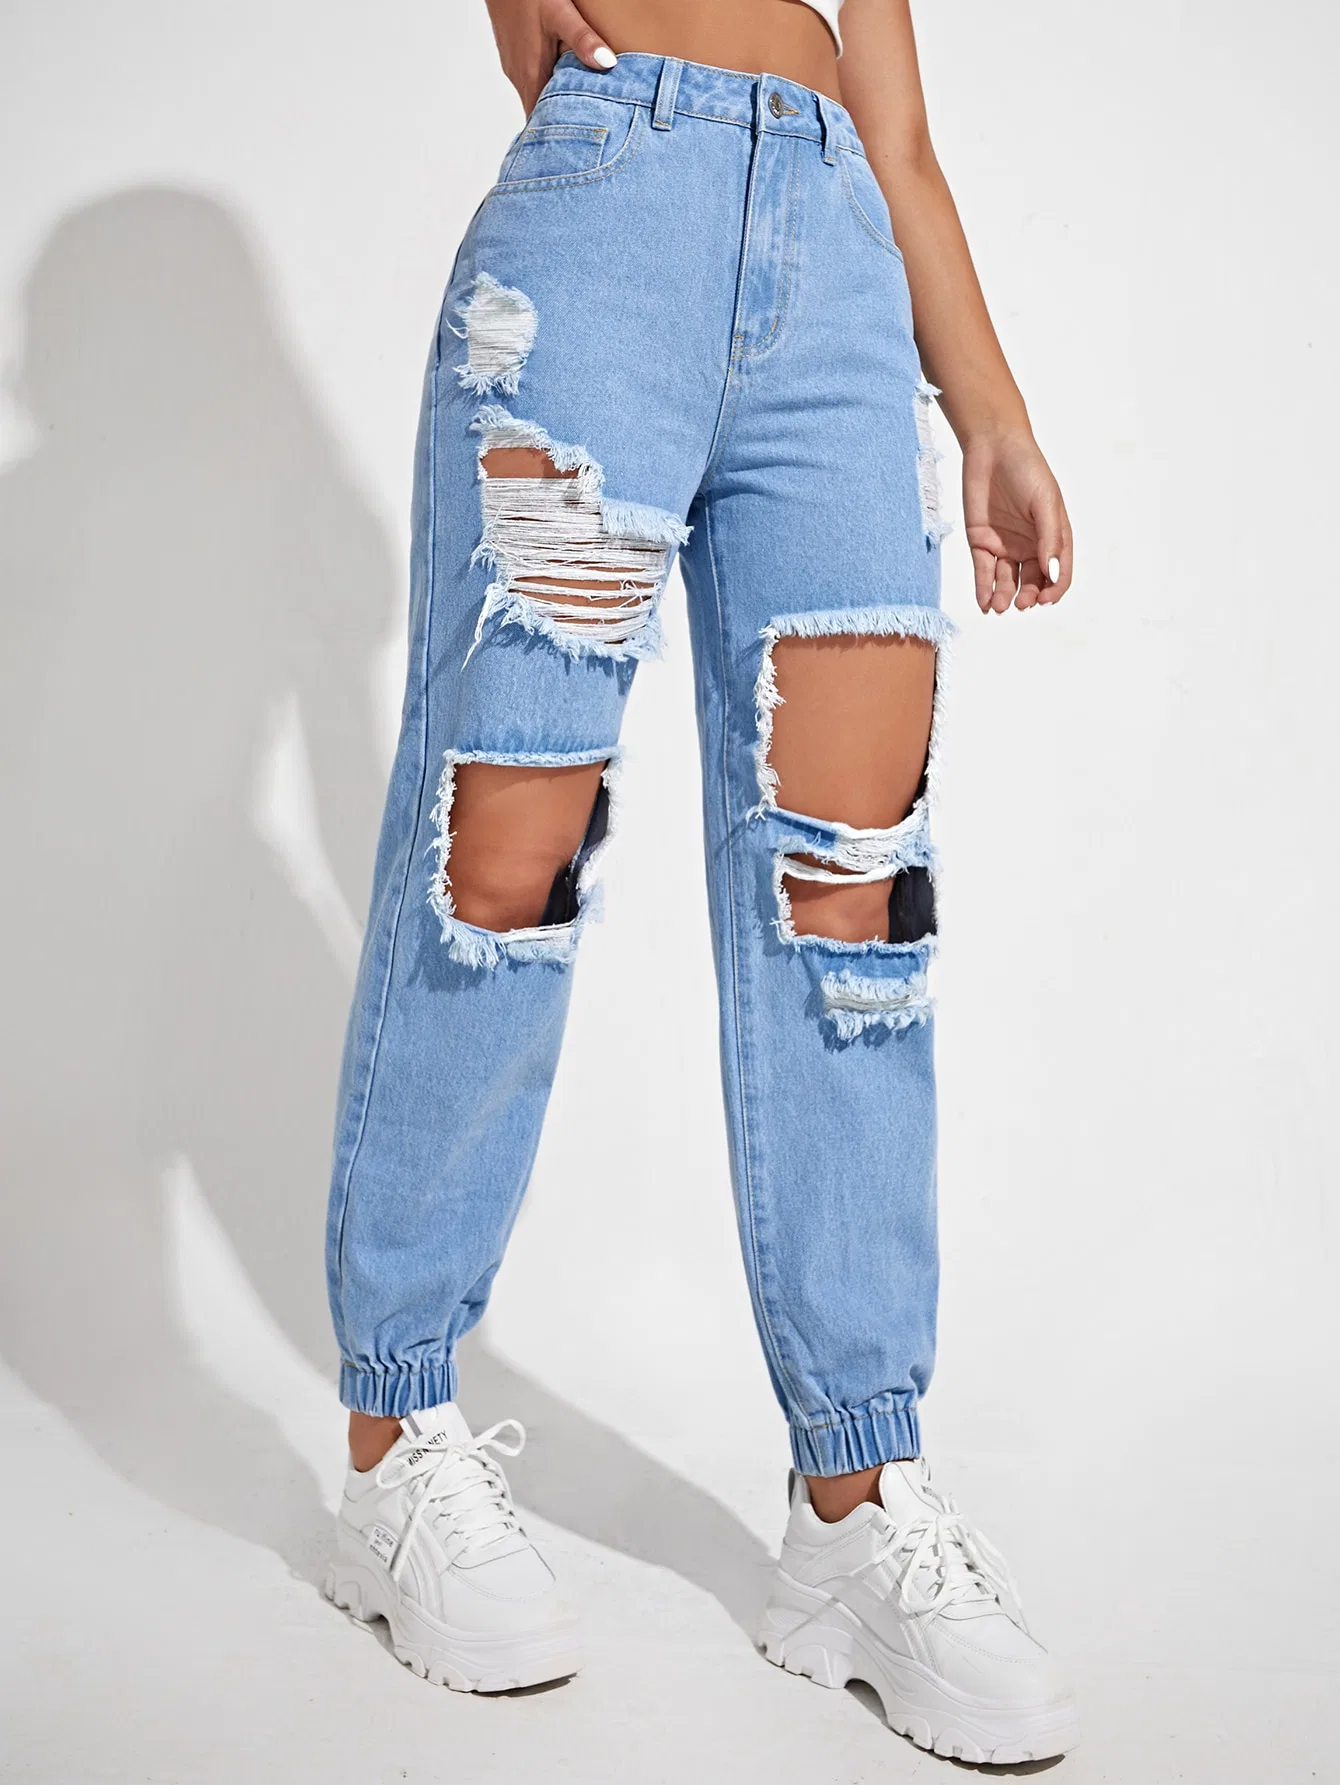 Jeans de mujer de moda nuevos, de calidad, con agujeros rasgados en la cintura alta, sin estiramiento, con dobladillo inferior, estilo boyfriend, color azul claro